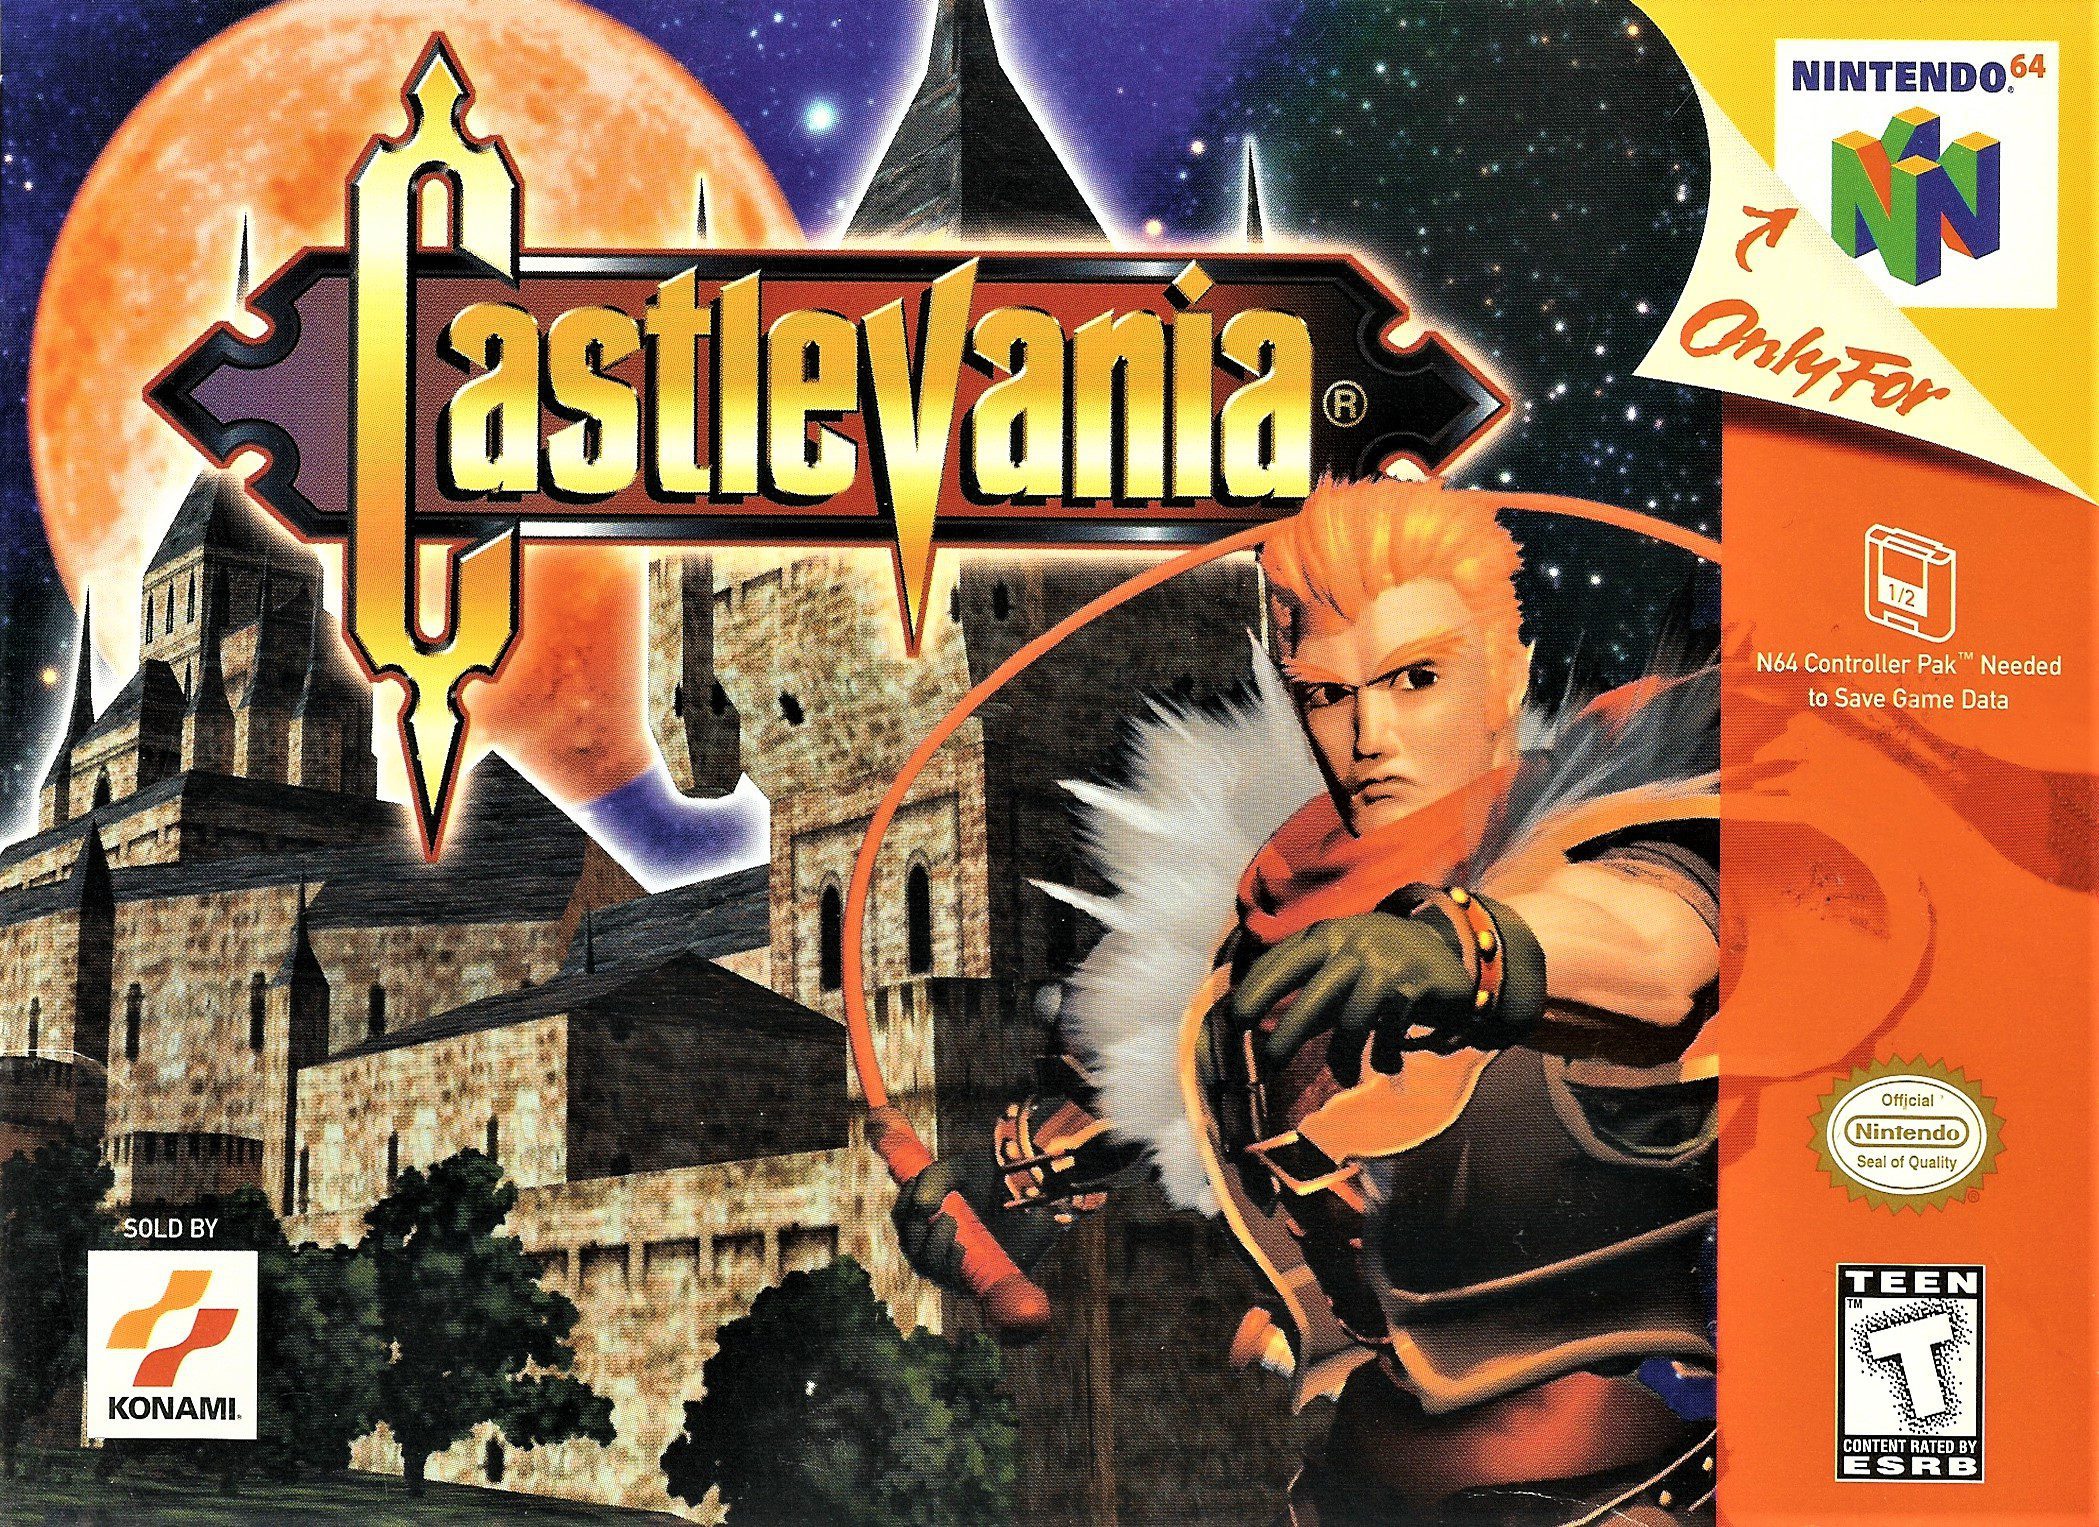 Castlevania for Nintendo 64